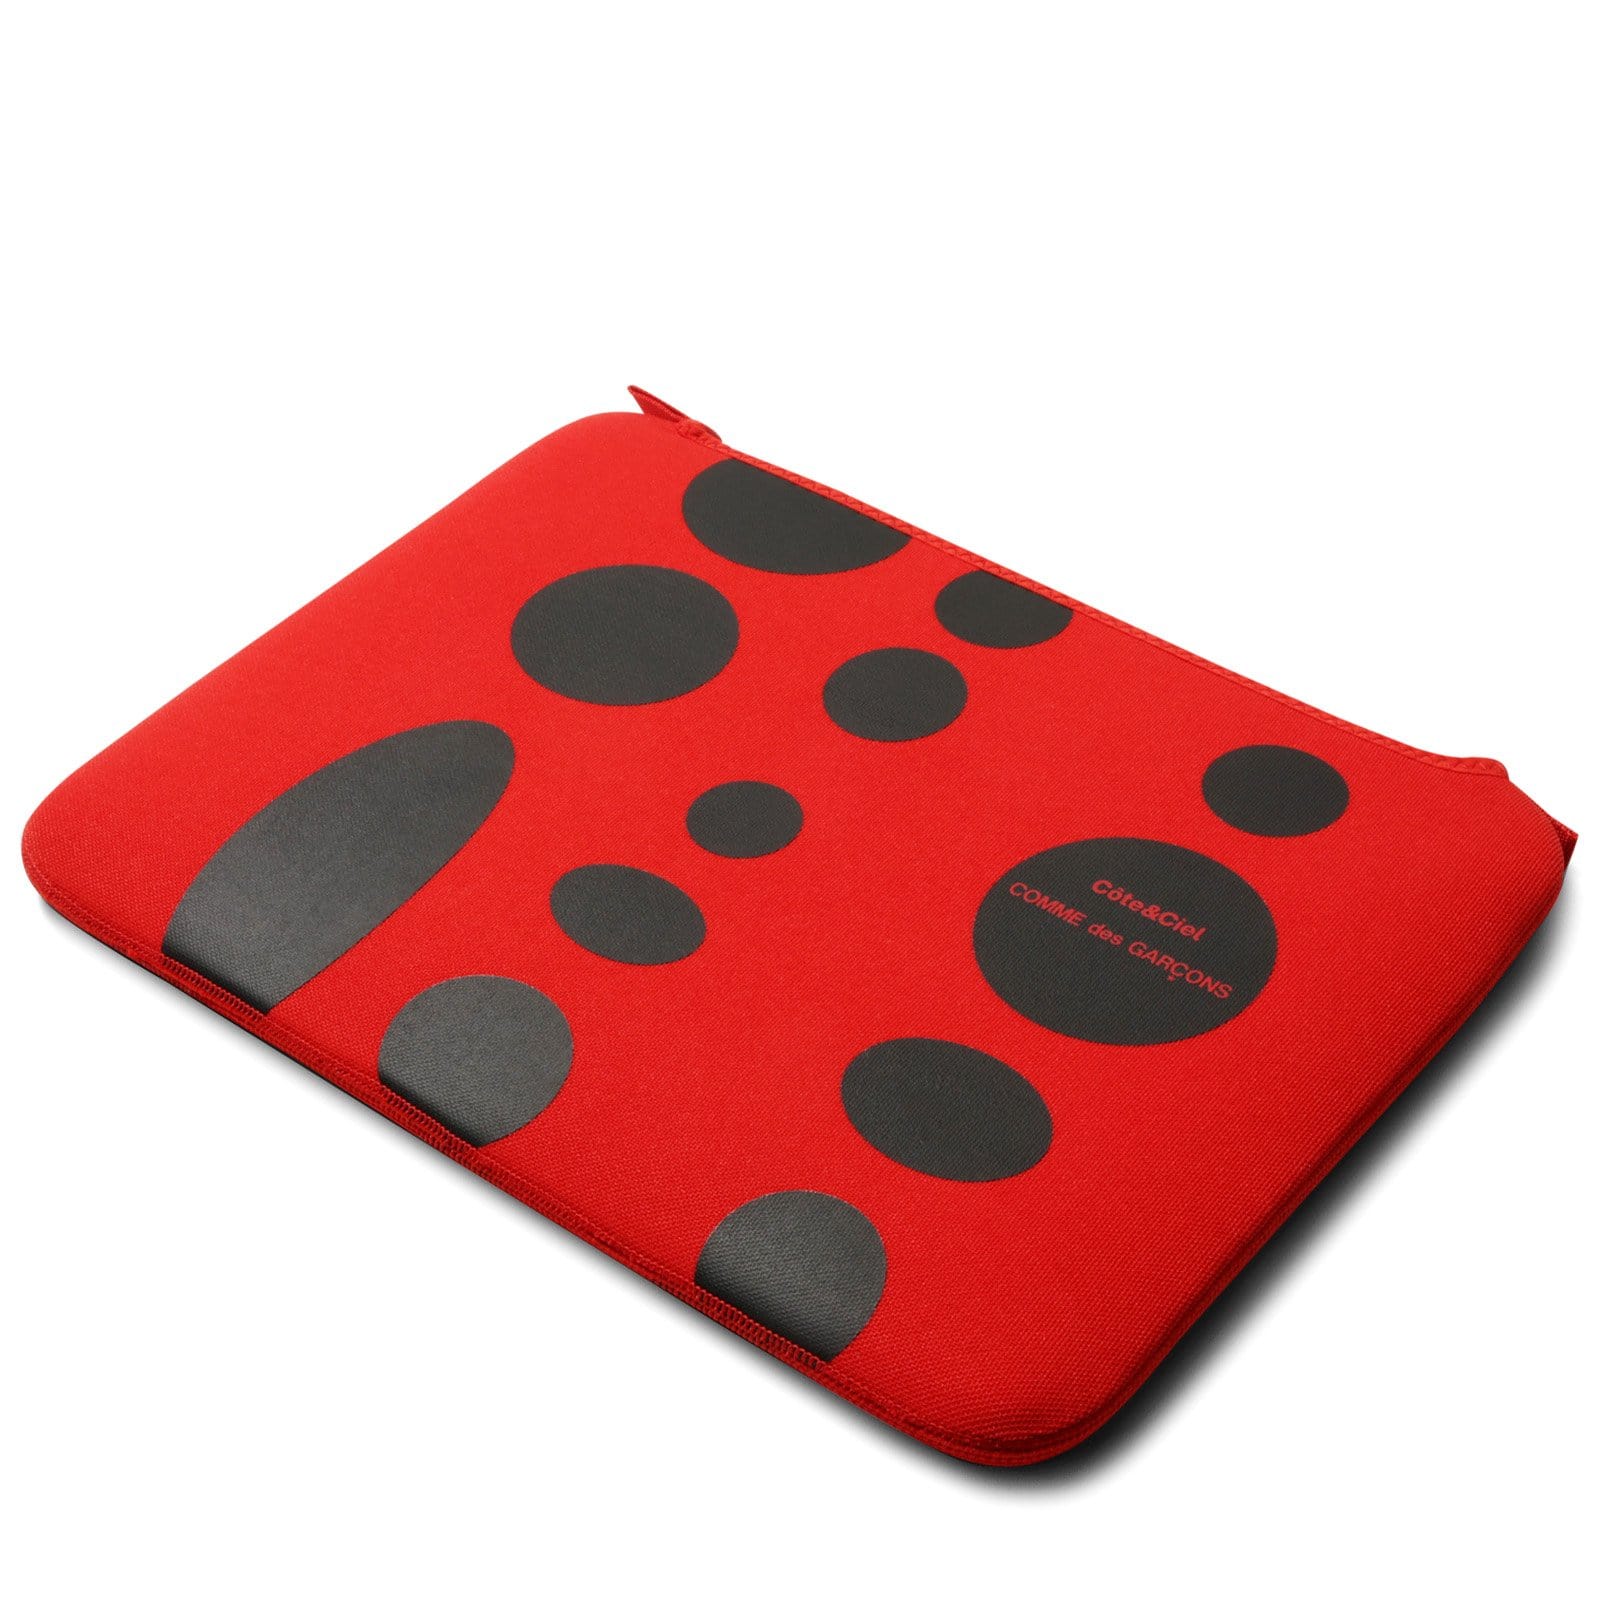 Comme Des Garçons Wallet Bags & Accessories RED / 15" x Cote & Ciel BLACK DOTS MACBOOK CASE 15"